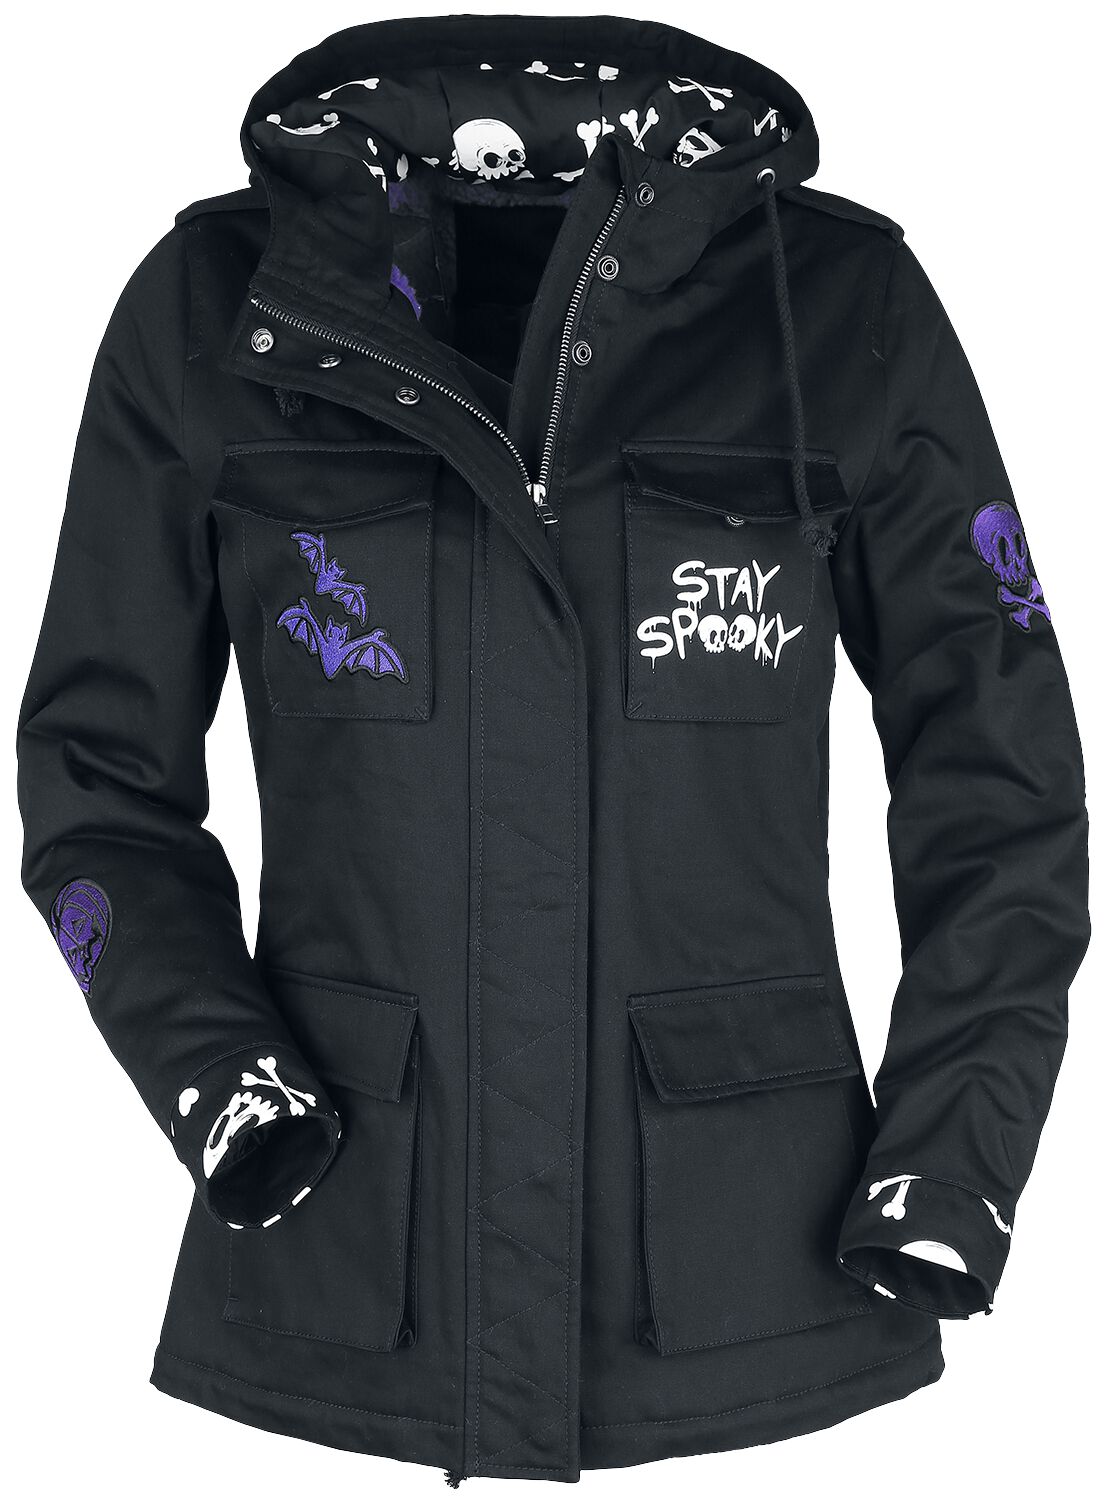 Full Volume by EMP Stay spooky between-seasons jacket Between-seasons Jacket black